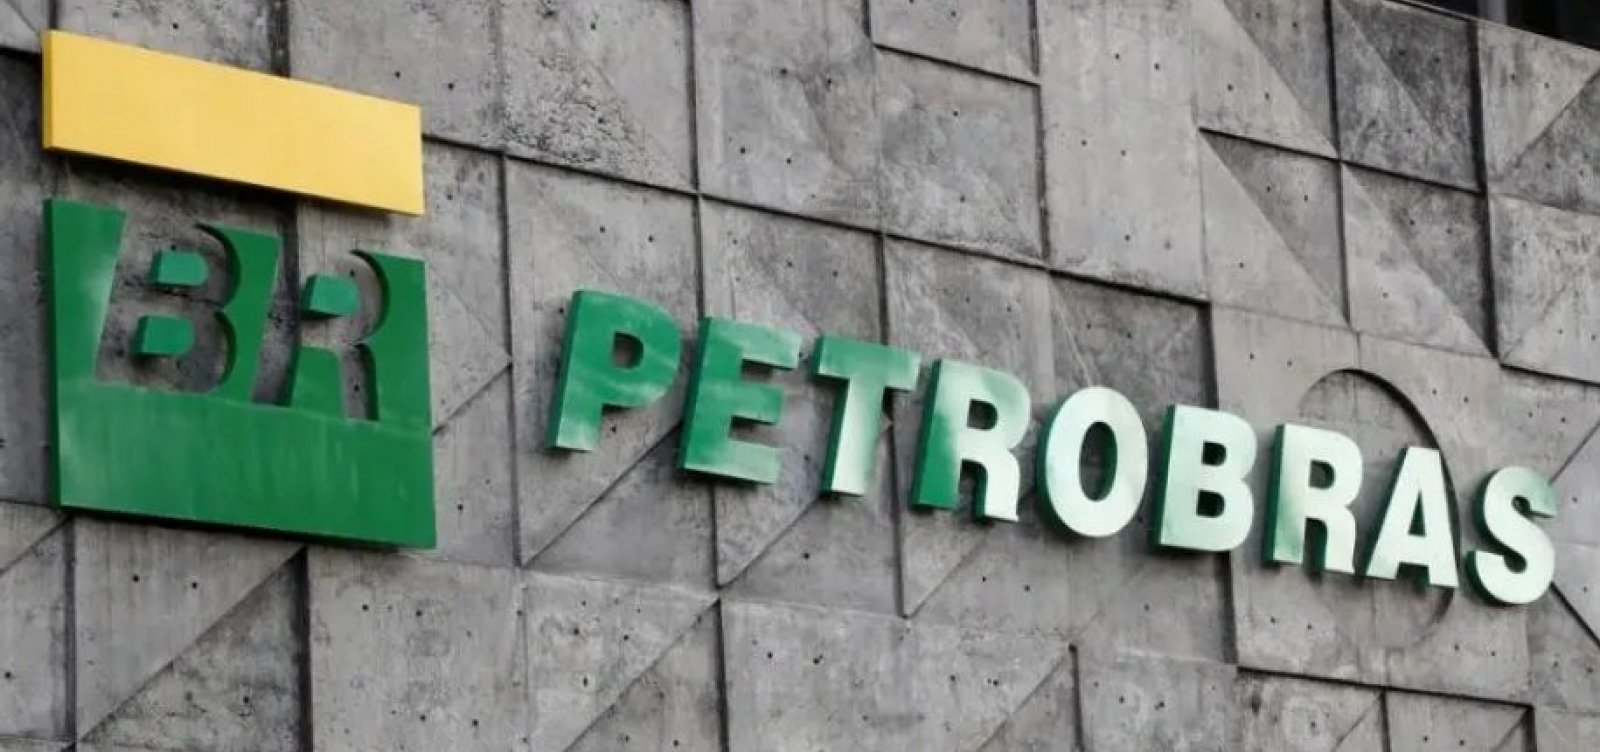 Comitê da Petrobras considera inelegíveis dois nomes indicados para conselho da estatal